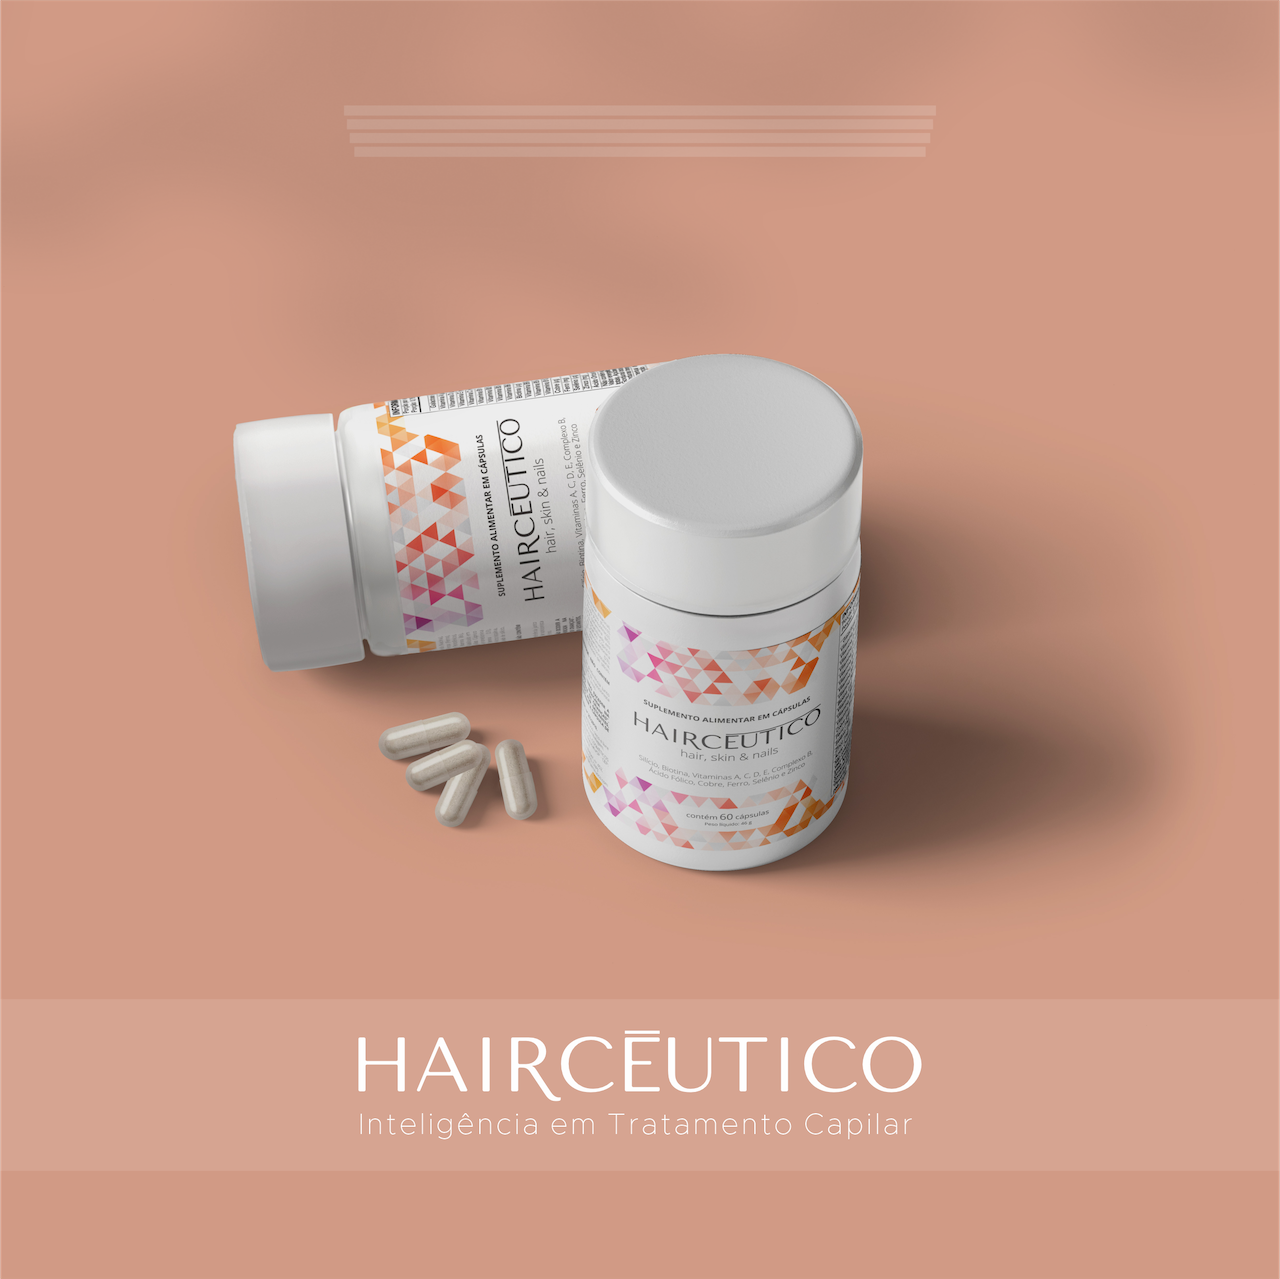 Haircēutico - Tratamento para 12 Meses